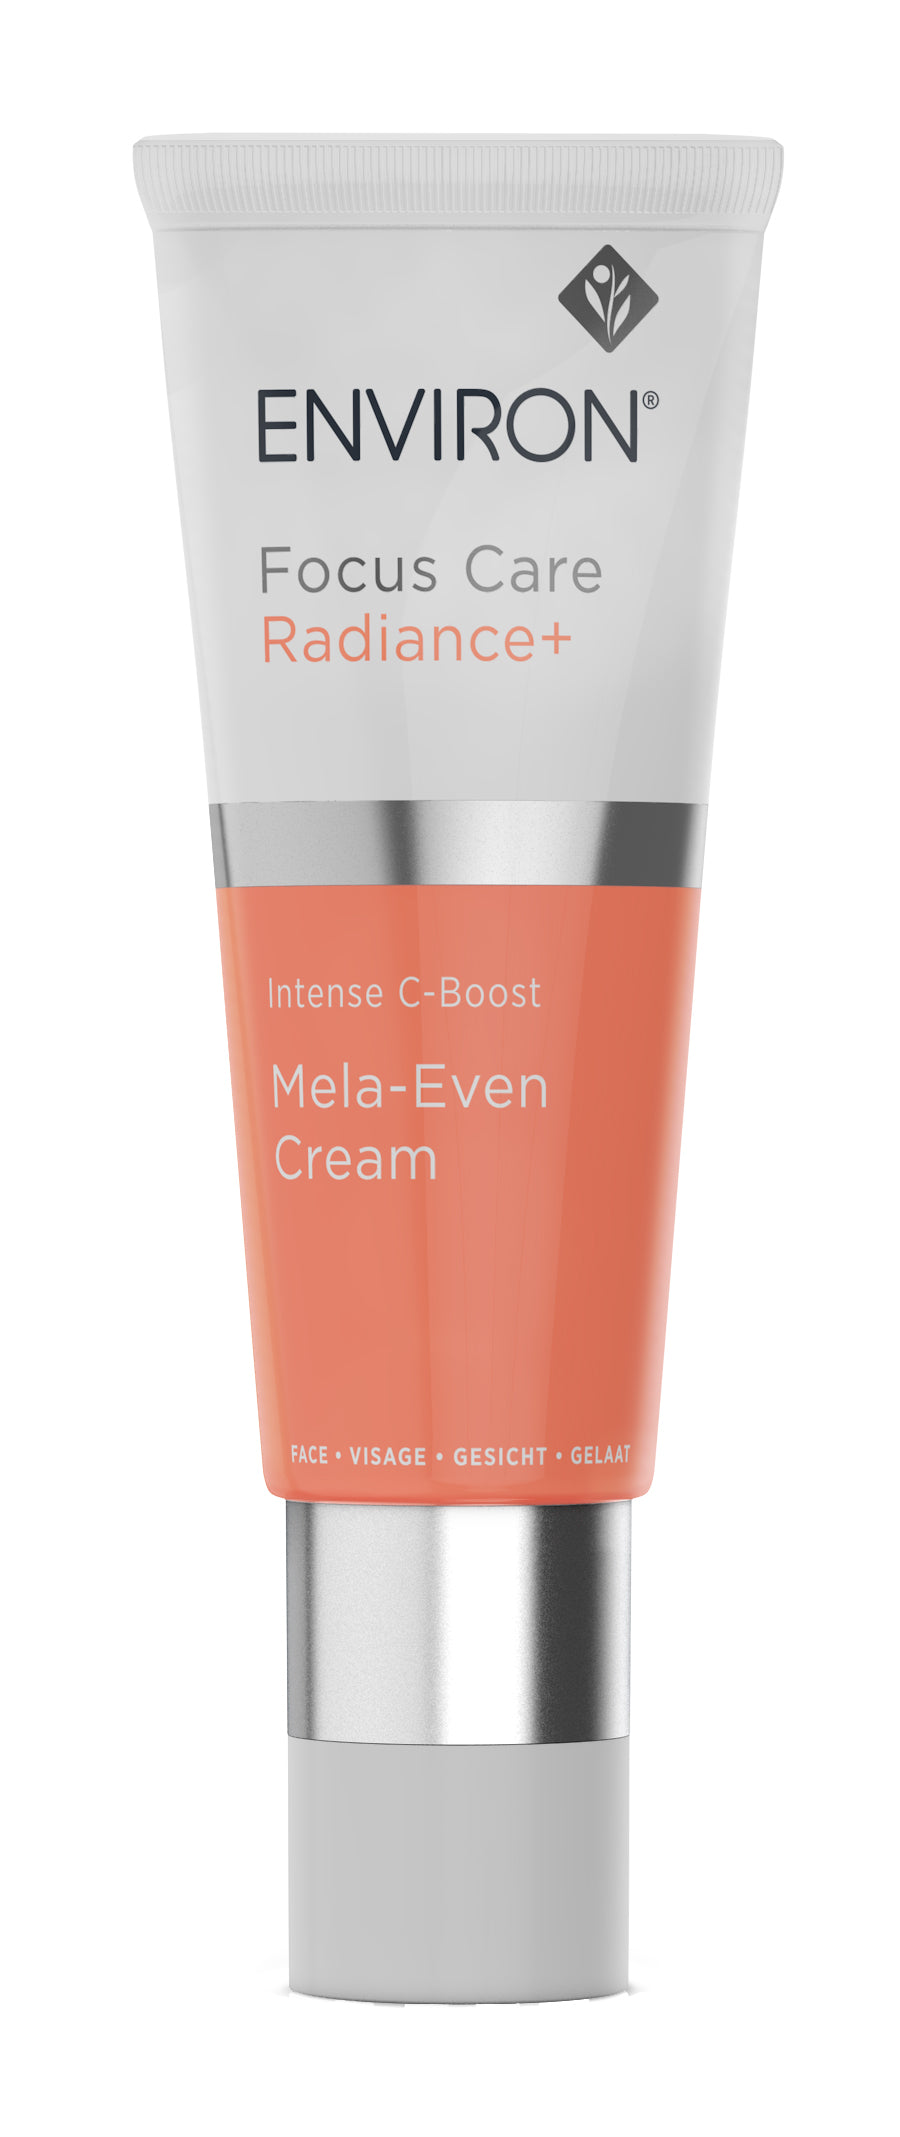 Environ Focus Care Radiance + Intense C-Boost Mela-Even Cream